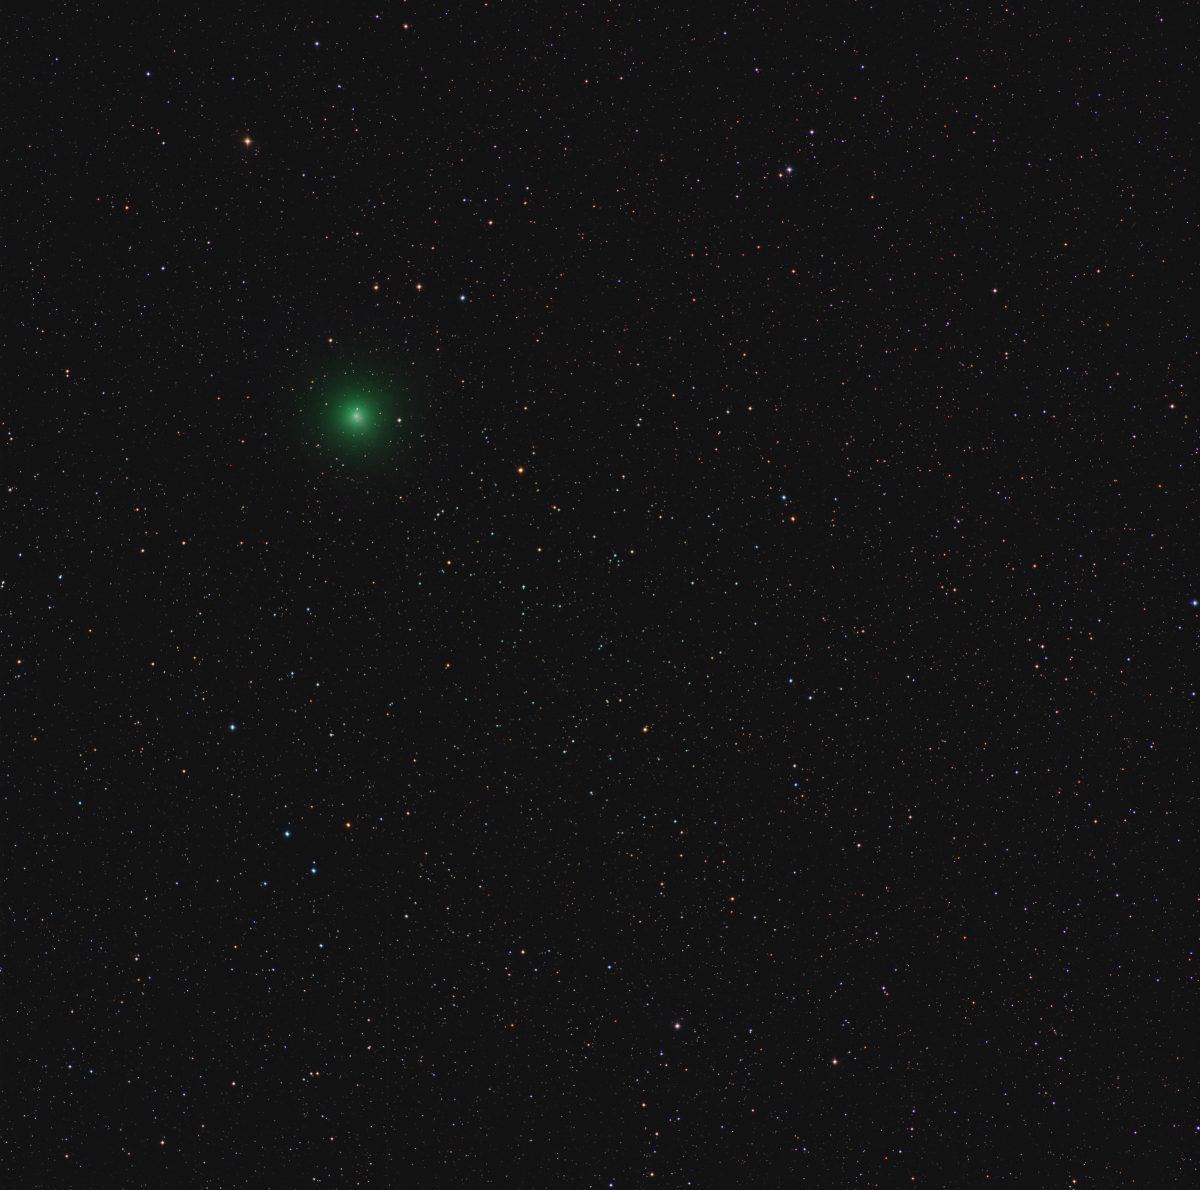 46P-Wirtanen Comet